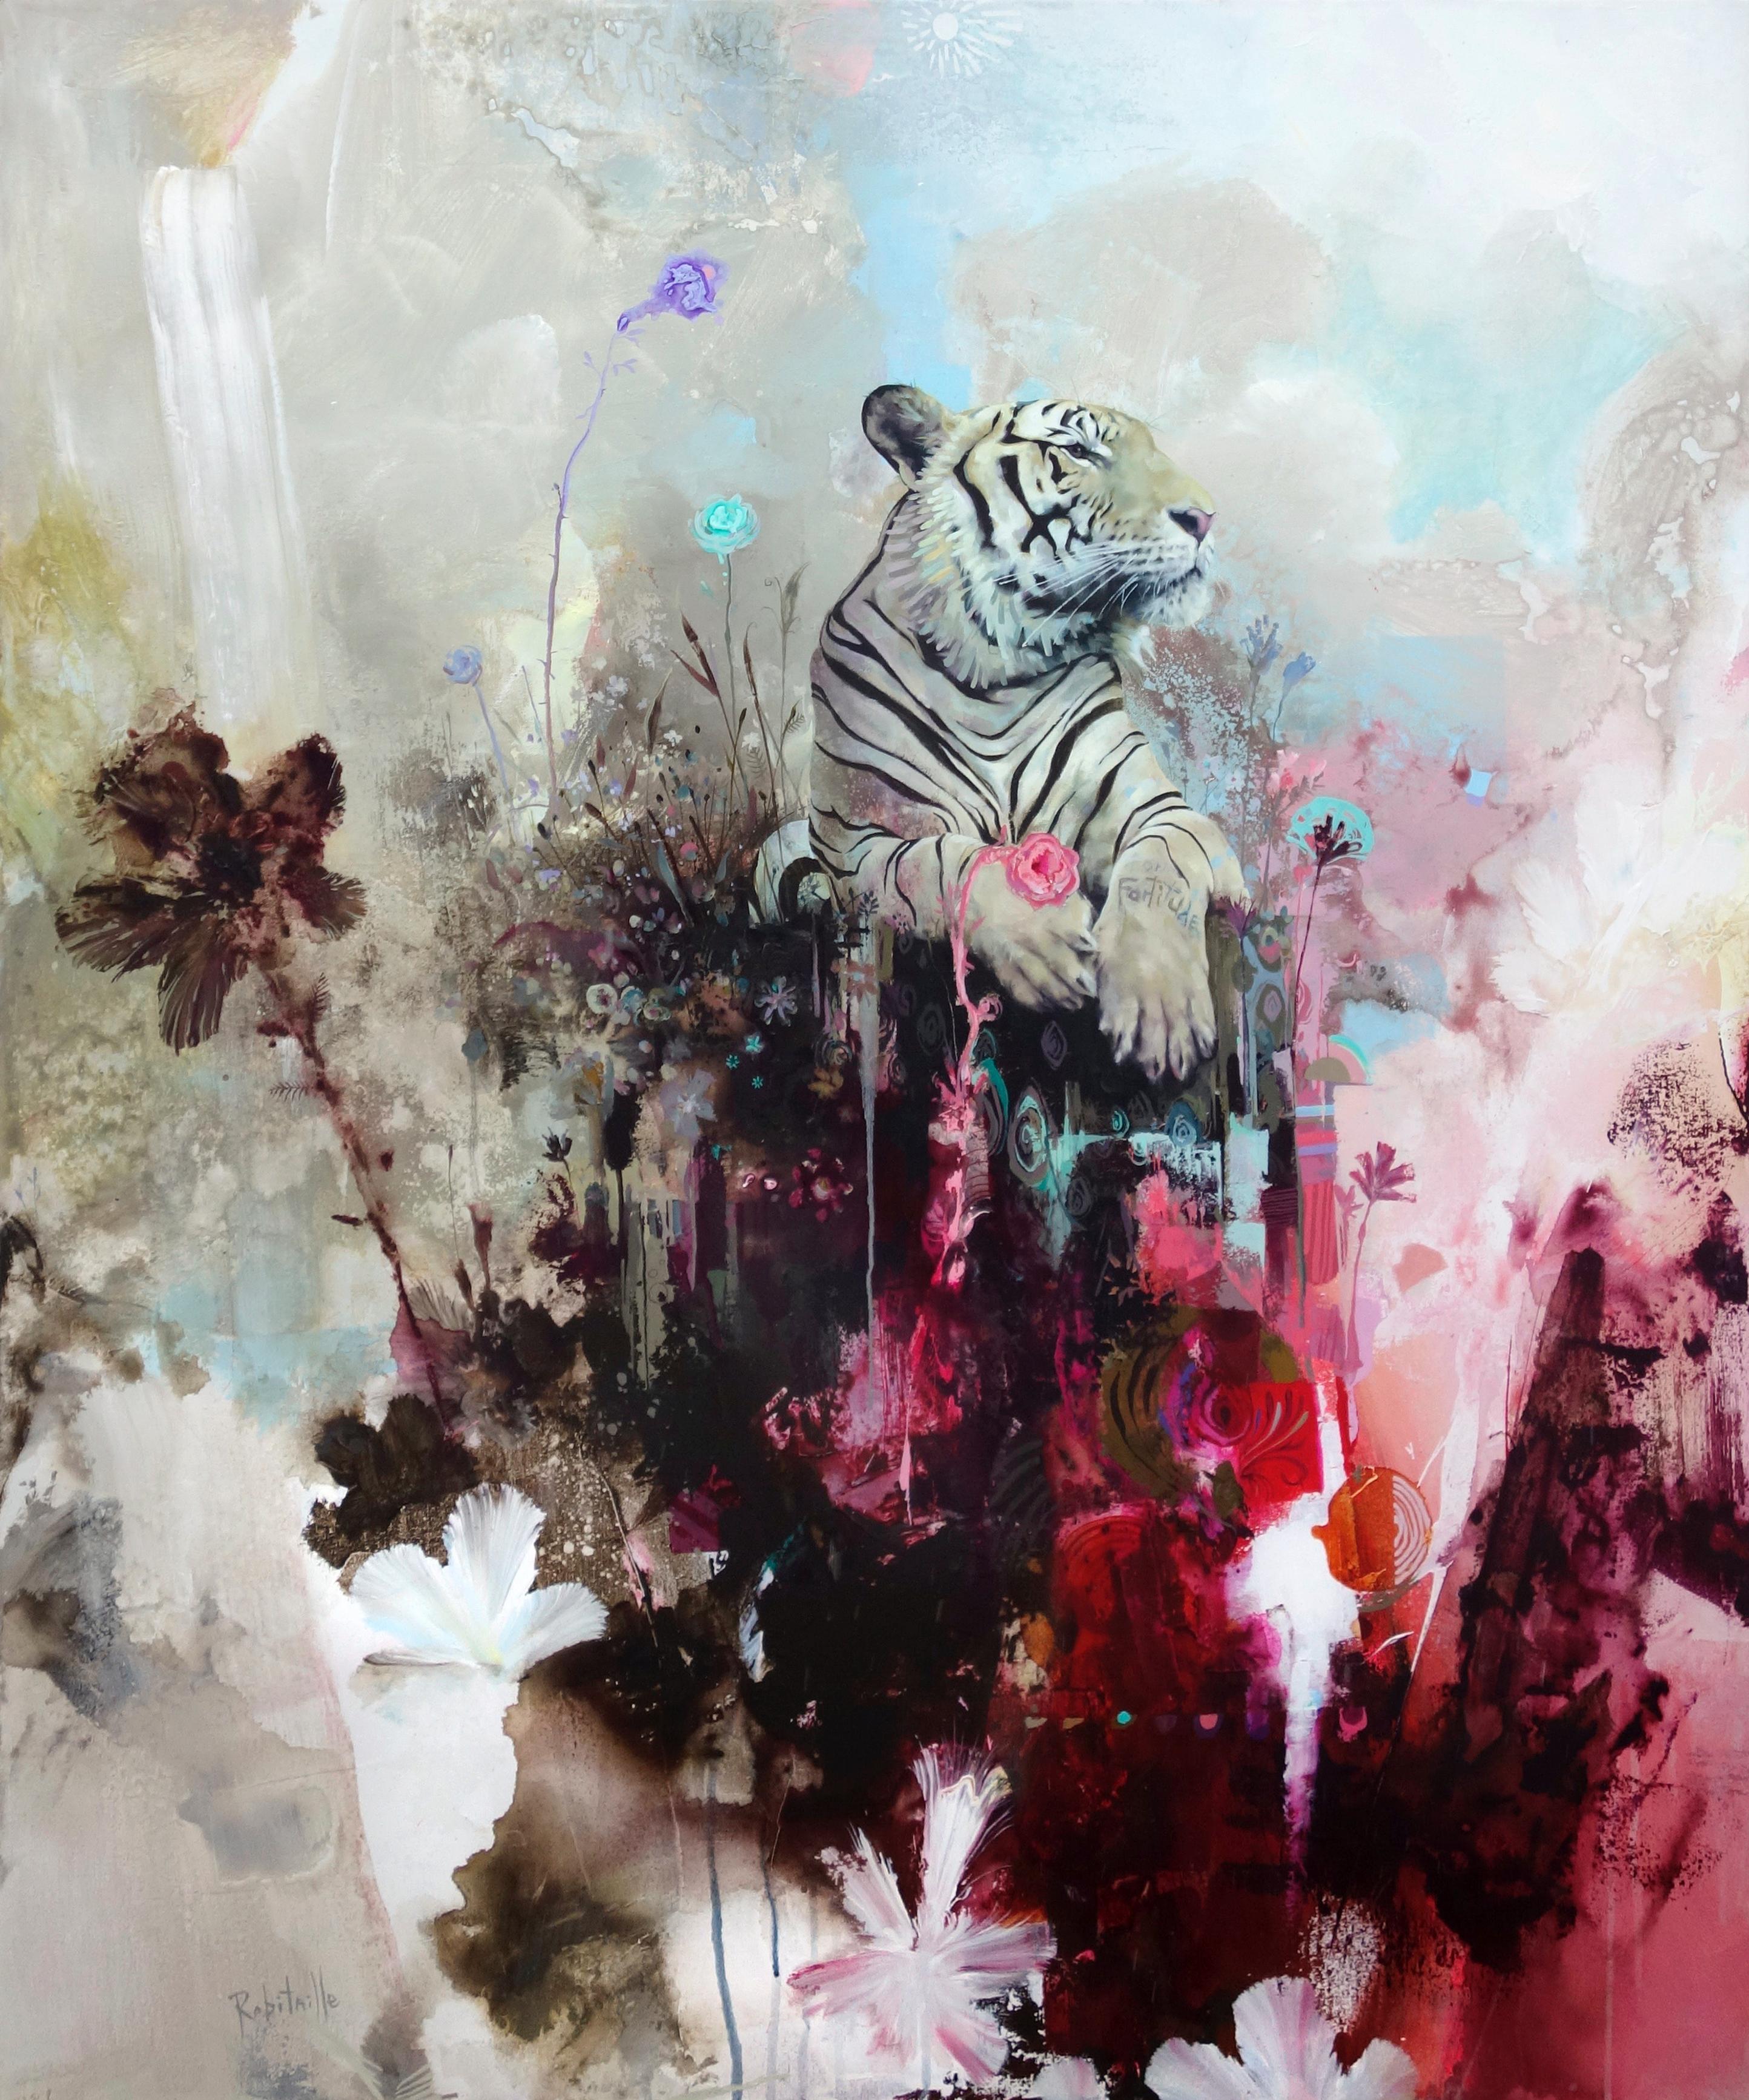 Abstract Painting Eric Robitaille - titude de montée, réalisme abstrait, tigre avec palette vive et texture de design